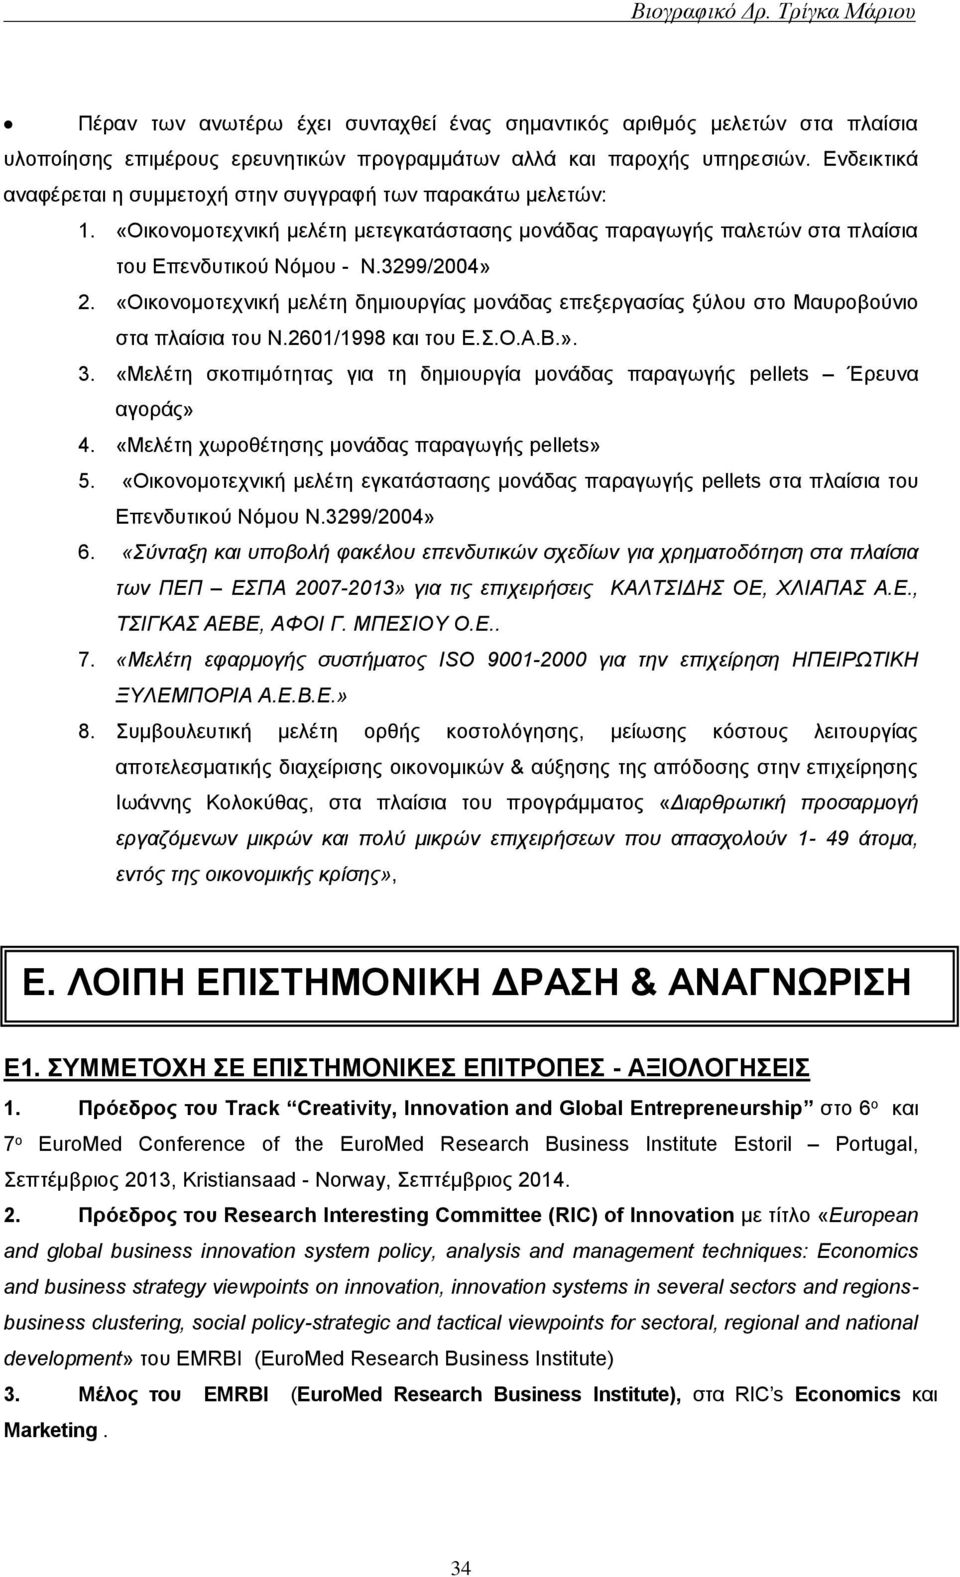 «Οικονομοτεχνική μελέτη δημιουργίας μονάδας επεξεργασίας ξύλου στο Μαυροβούνιο στα πλαίσια του Ν.2601/1998 και του Ε.Σ.Ο.Α.Β.». 3.